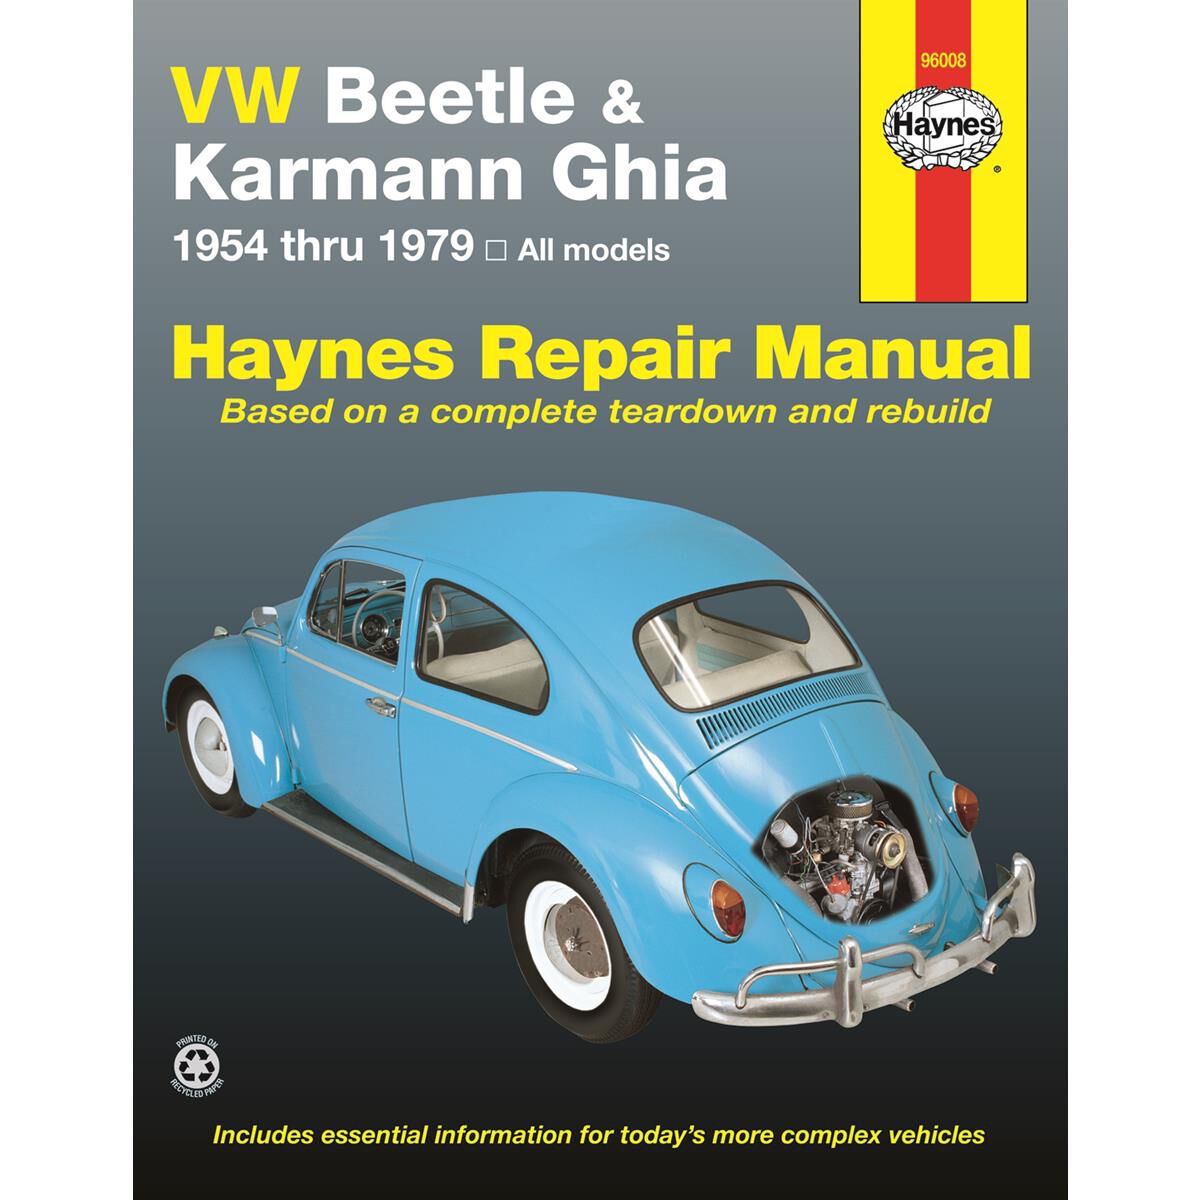 1971 vw beetle repair manual pdf free